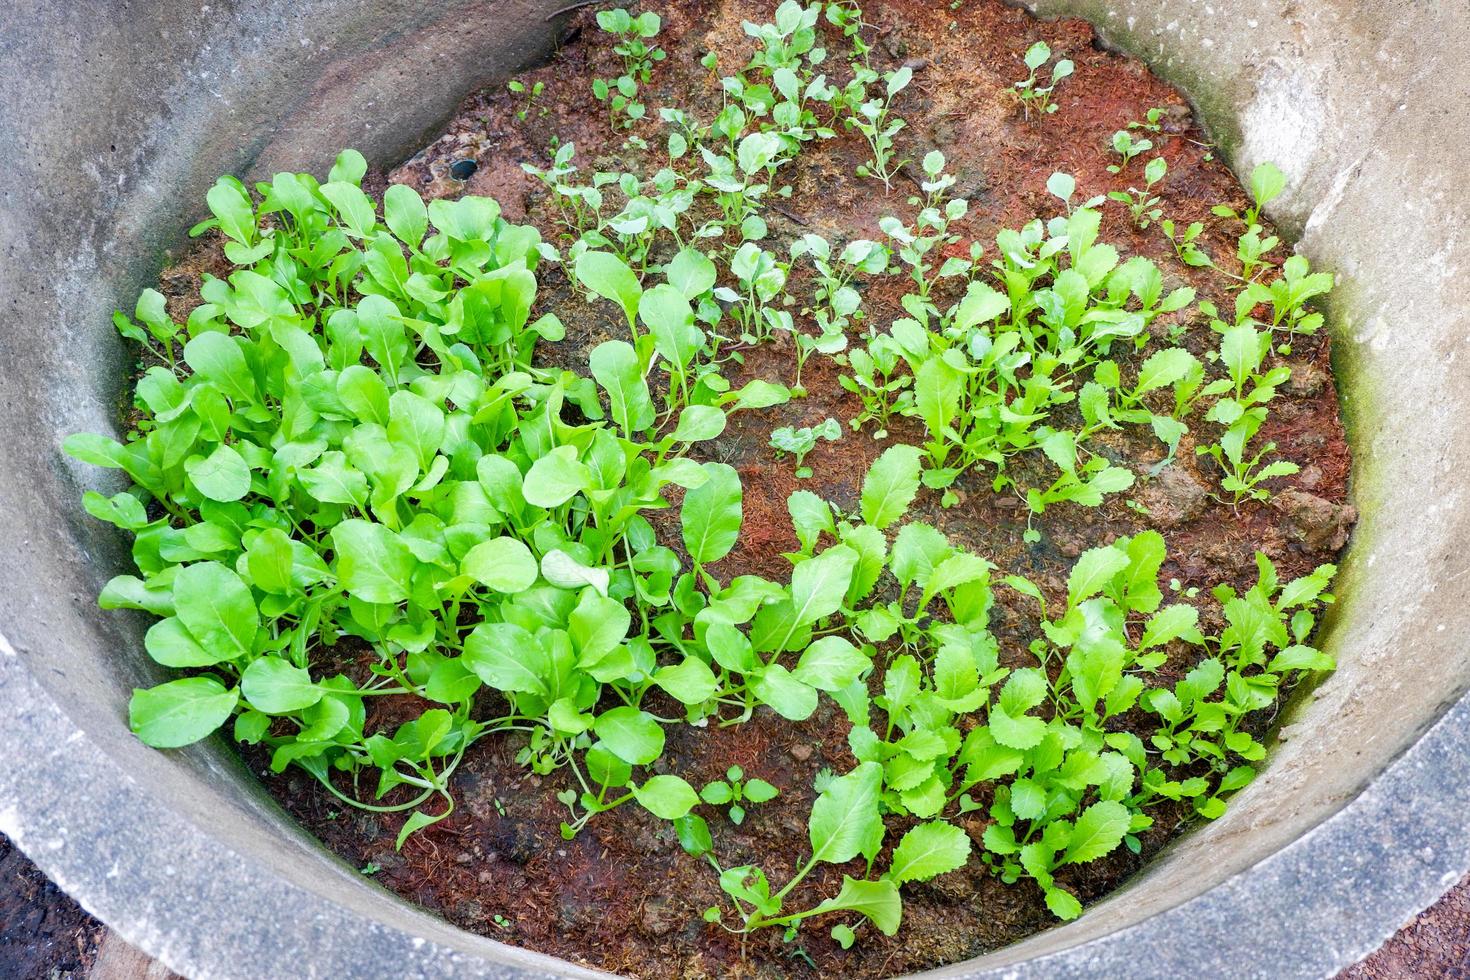 soil vegetable garden, mustard greens lettuce vegetable gardening with mustard greens leaf fresh vegetable planting on ground in the backyard garden eco friendly gardening nature vegetable farm photo